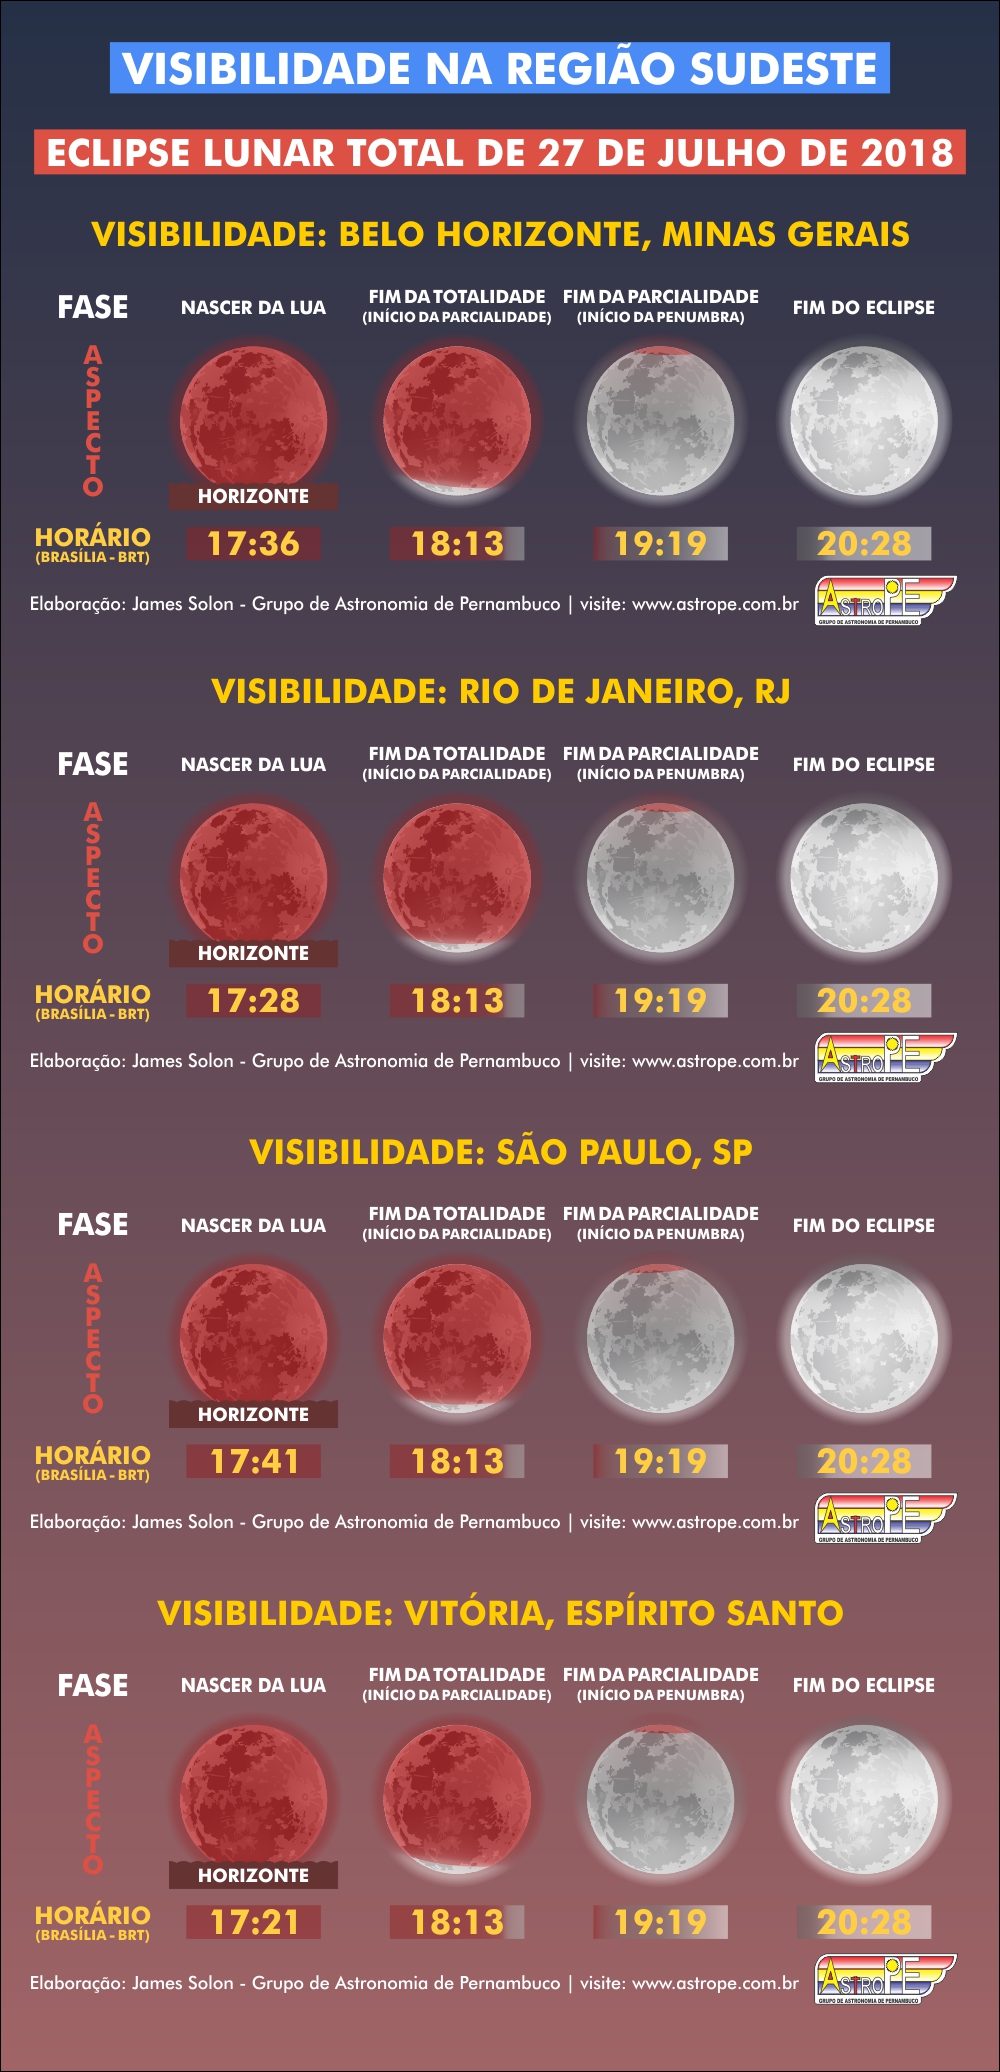 Horários e visibilidade do Eclipse Lunar Total de 27 de julho de 2018 na Região Sudeste do Brasil. Crédito: AstroPE.